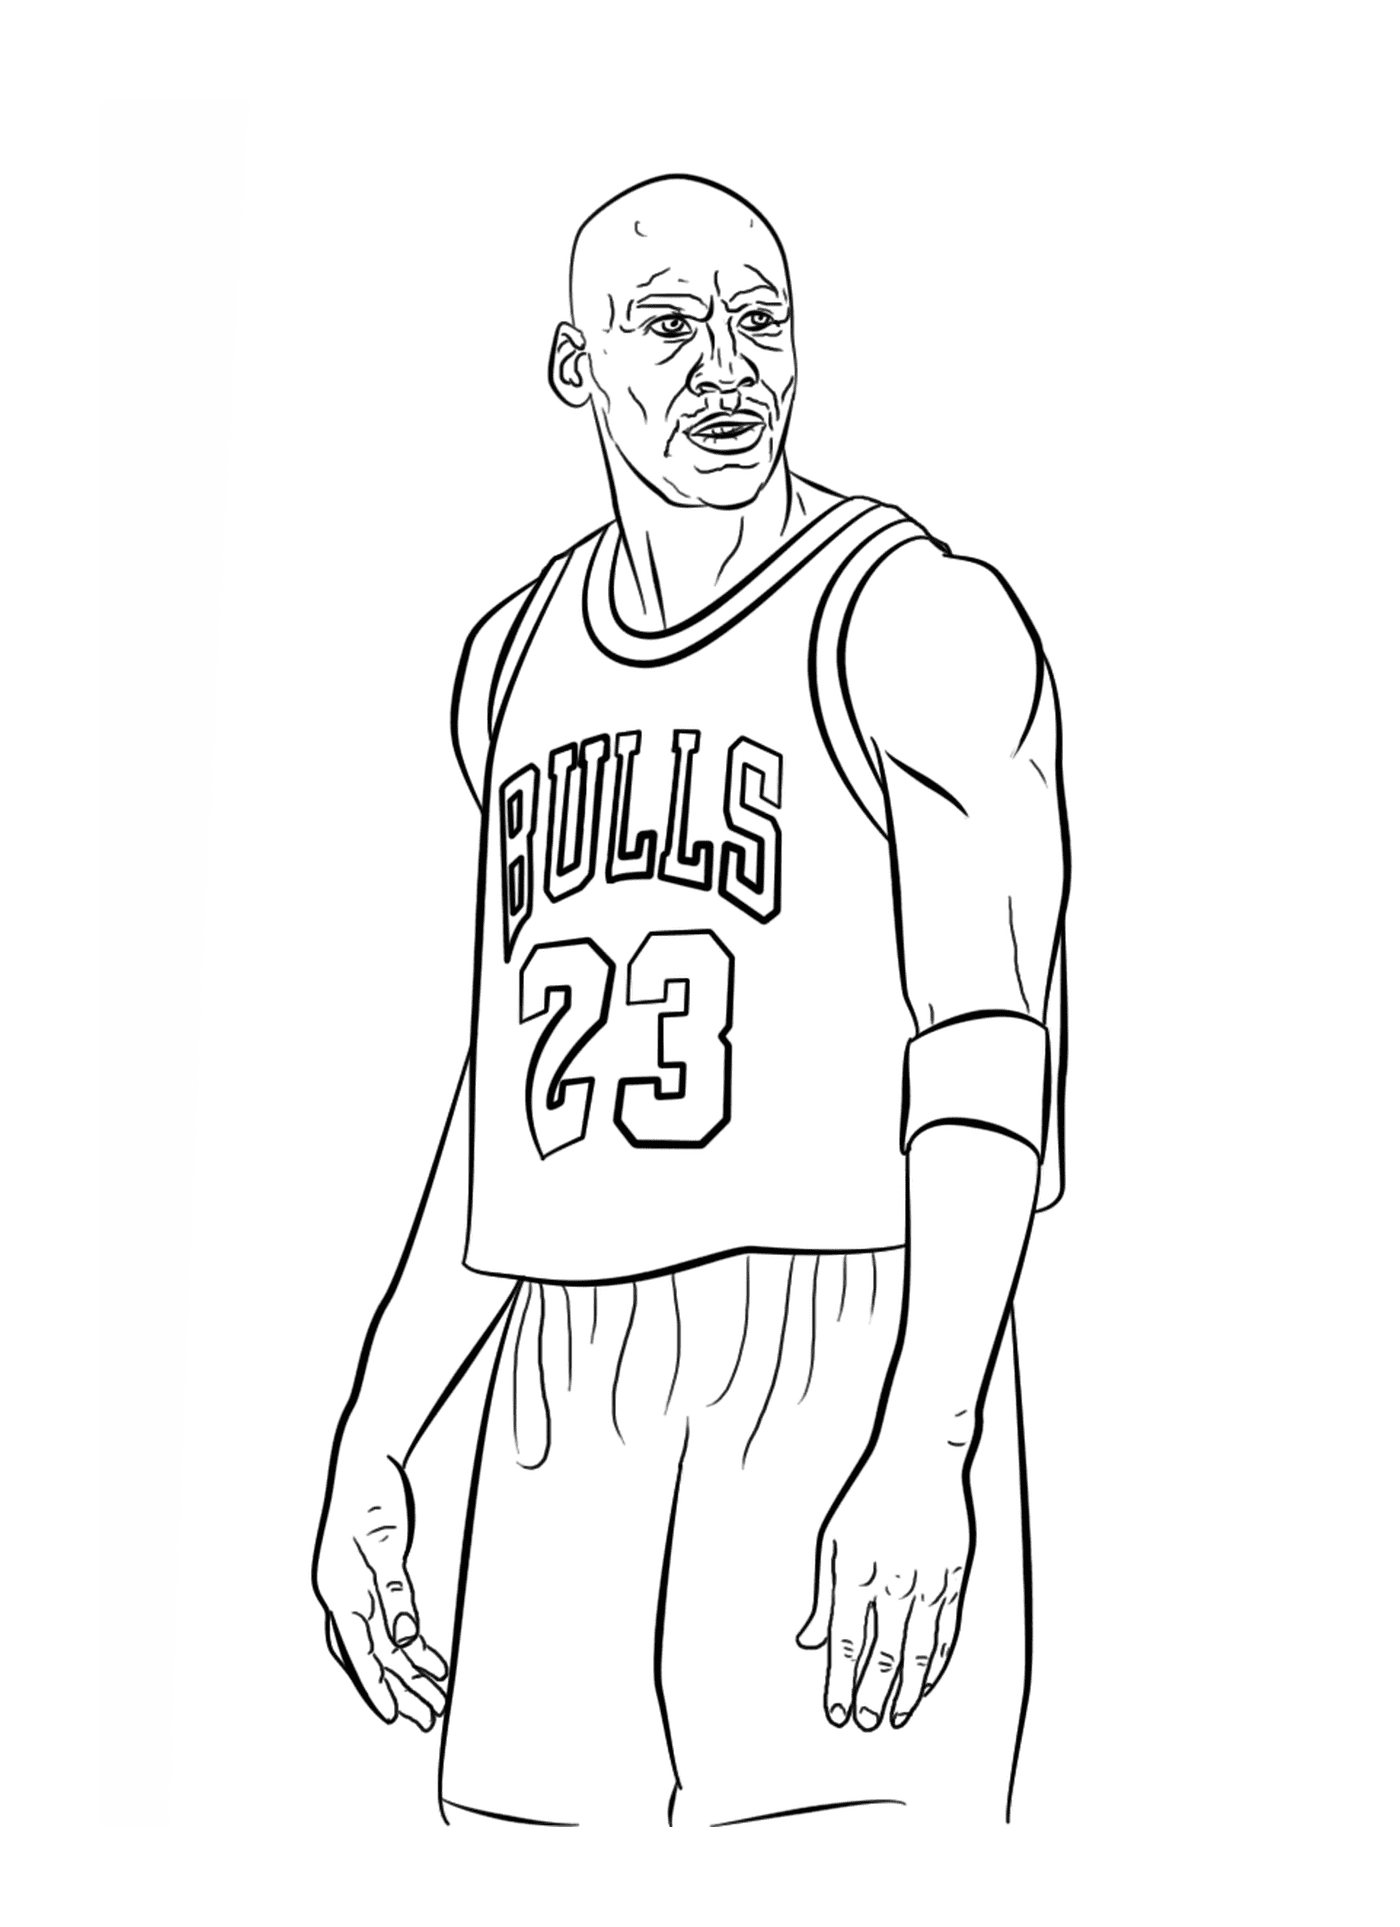   Michael Jordan, joueur de basket de la NBA 